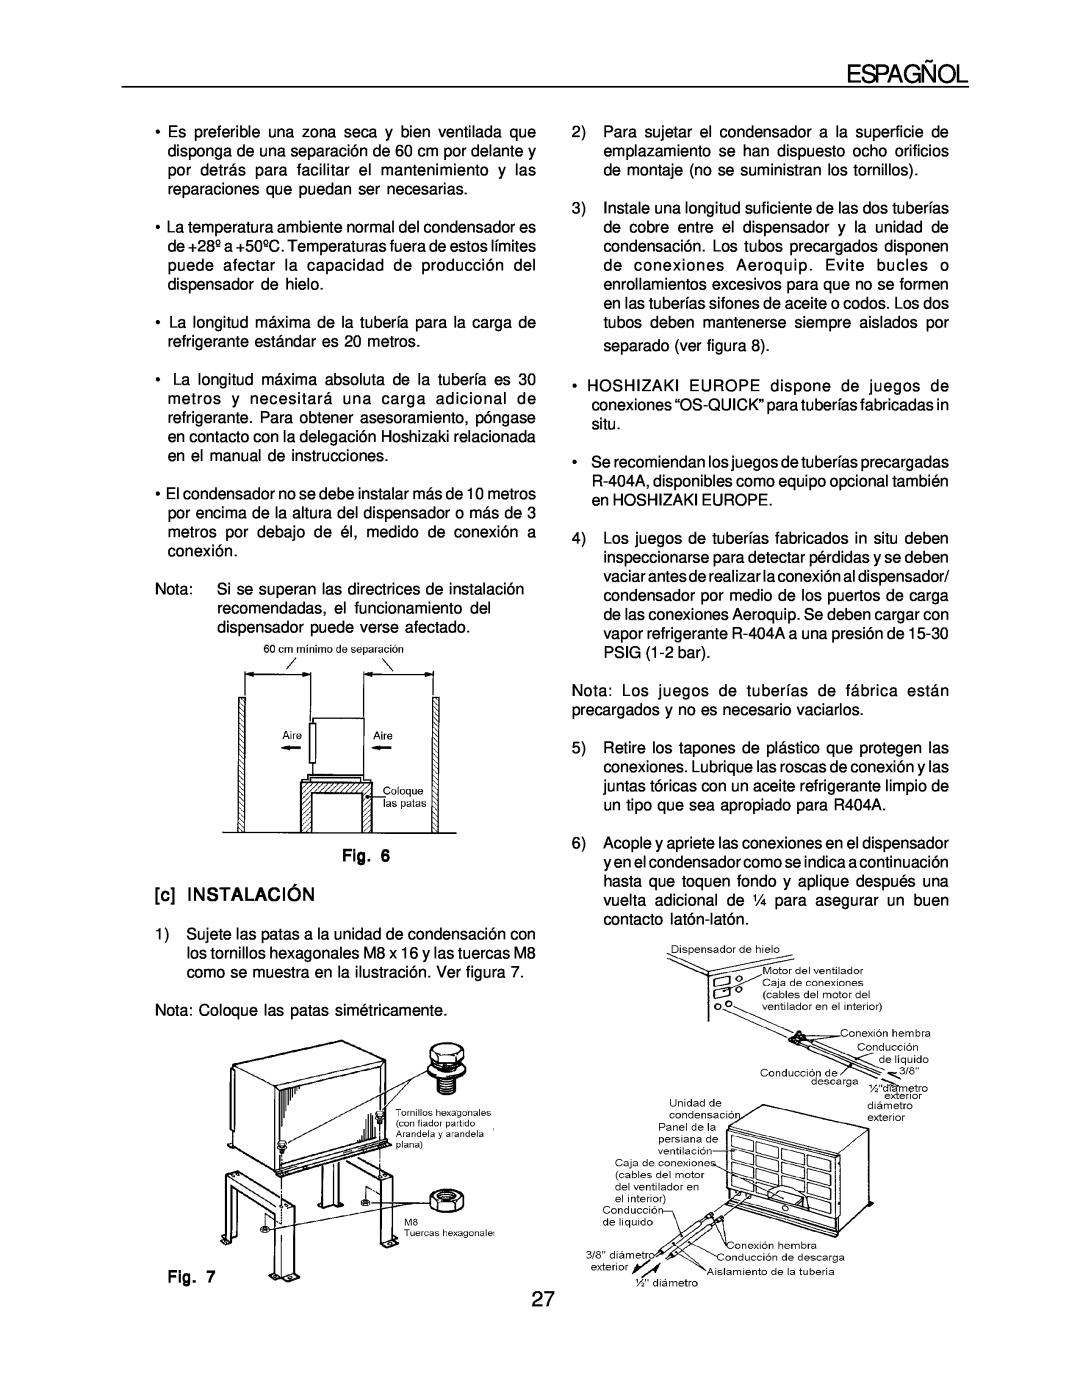 Hoshizaki KM-1300SRH-E, KM-1300SAH-E installation manual Espagñol, c INSTALACIÓN 